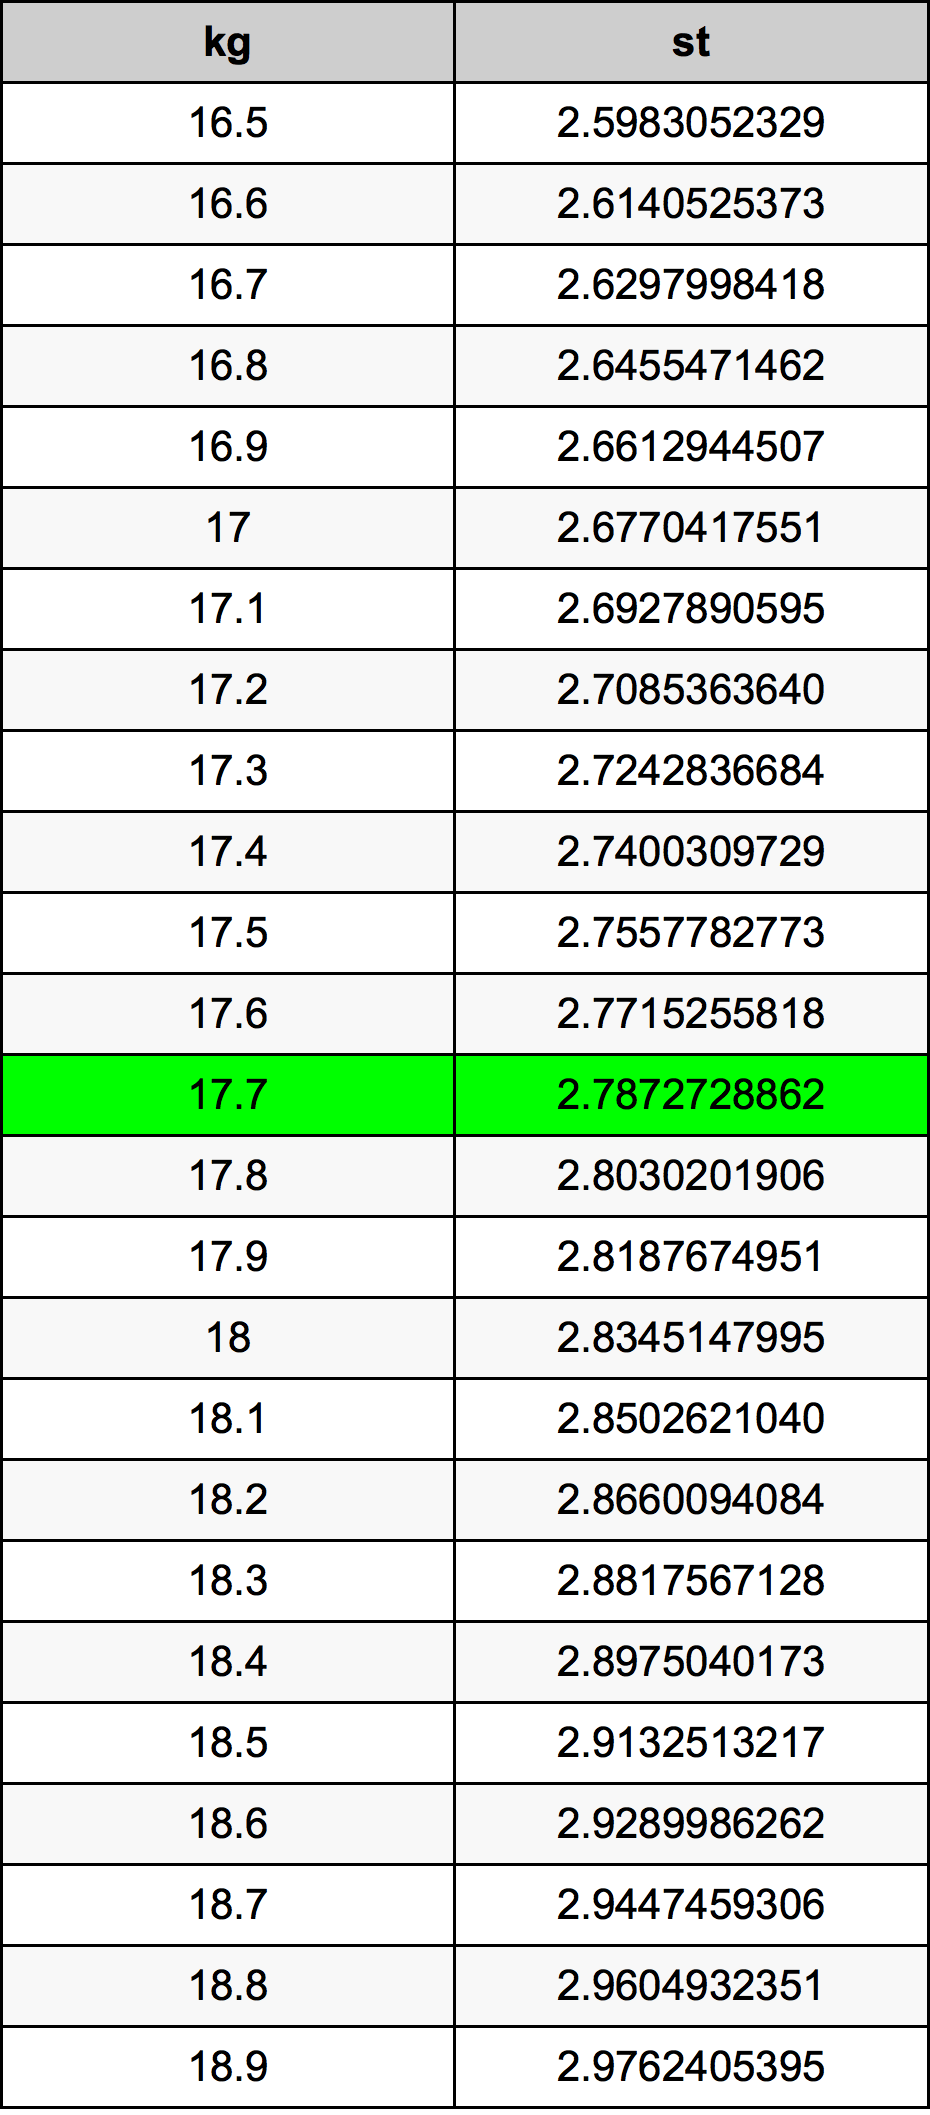 17.7 Kilogramme table de conversion